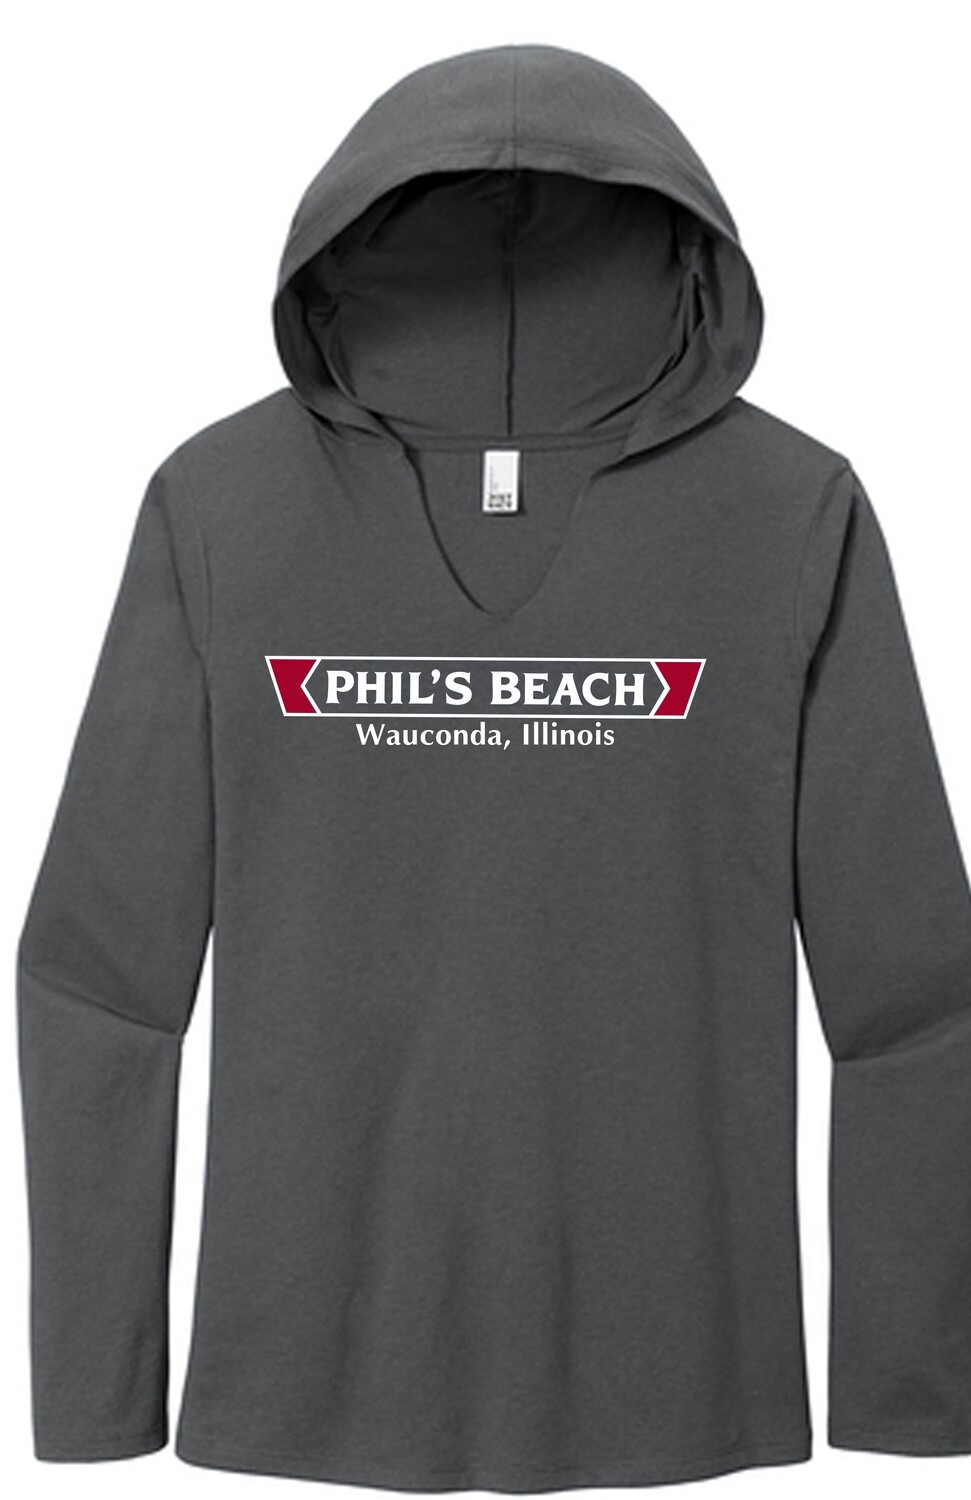 Phil's Beach Women's Long Sleeve Hooded T-shirt